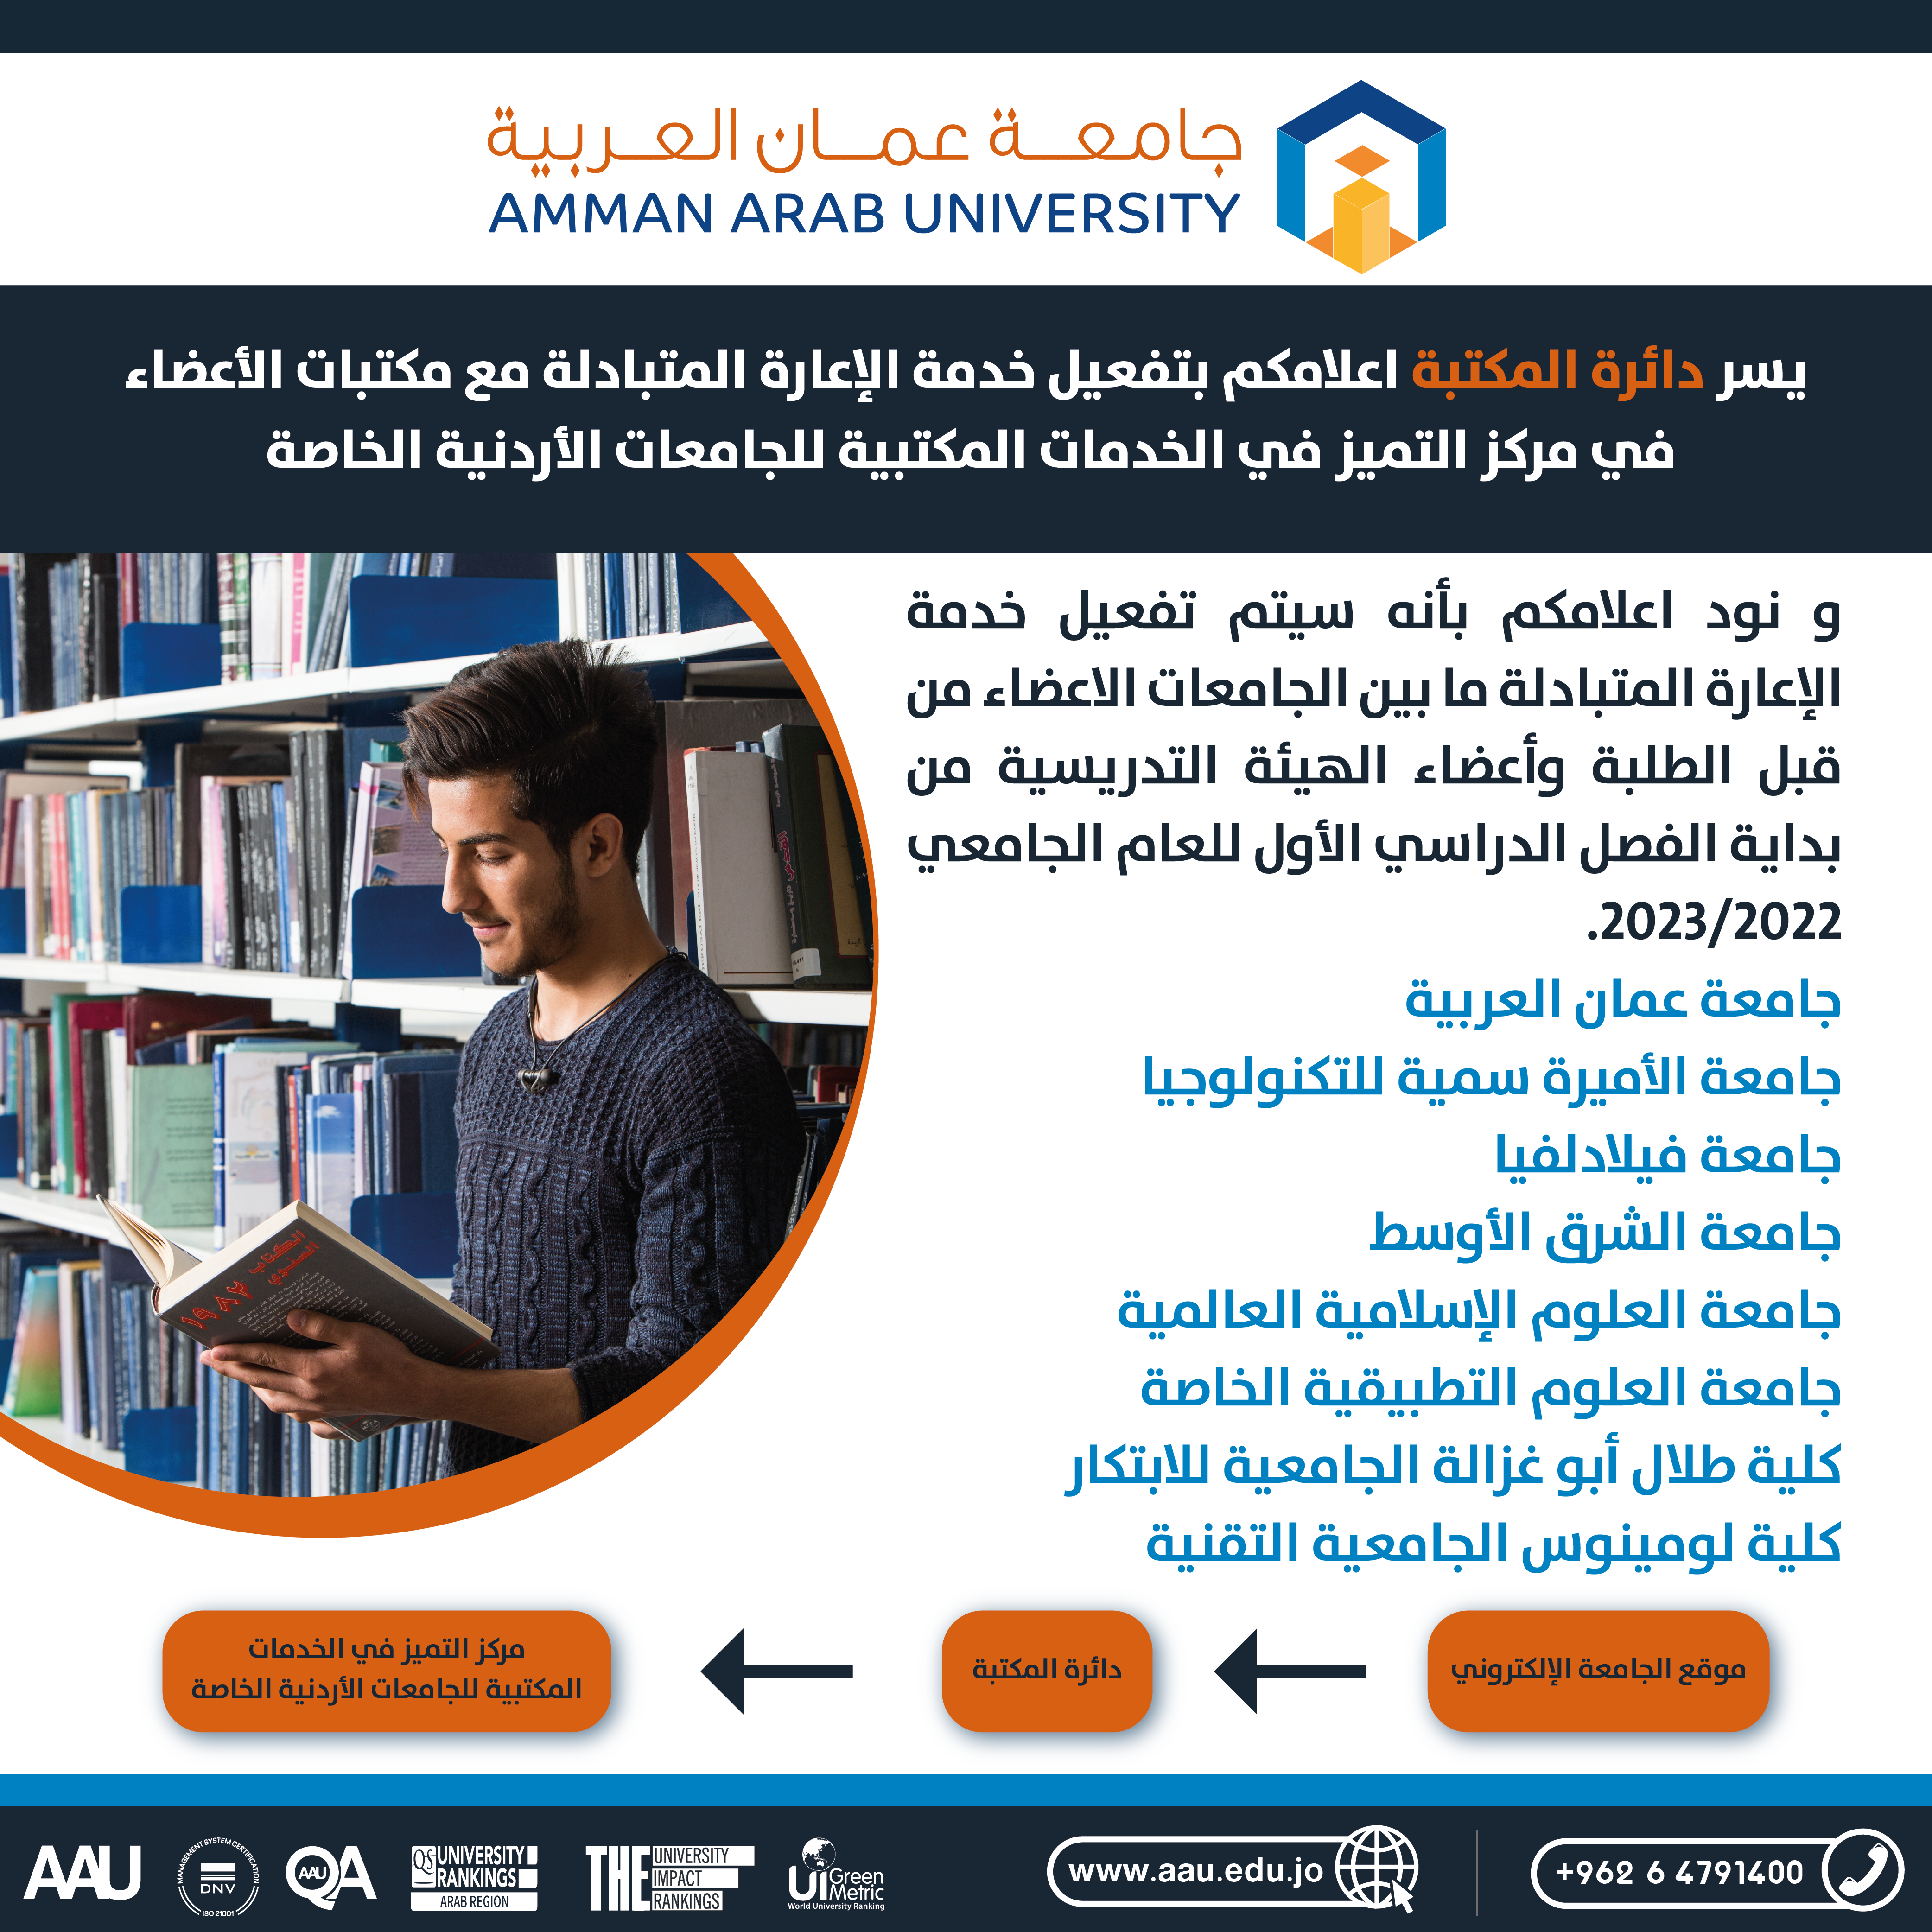 تفعيل خدمة الإعارة المتبادلة مع مكتبات الأعضاء في مركز التميز في الخدمات المكتبية للجامعات الأردنية الخاصة